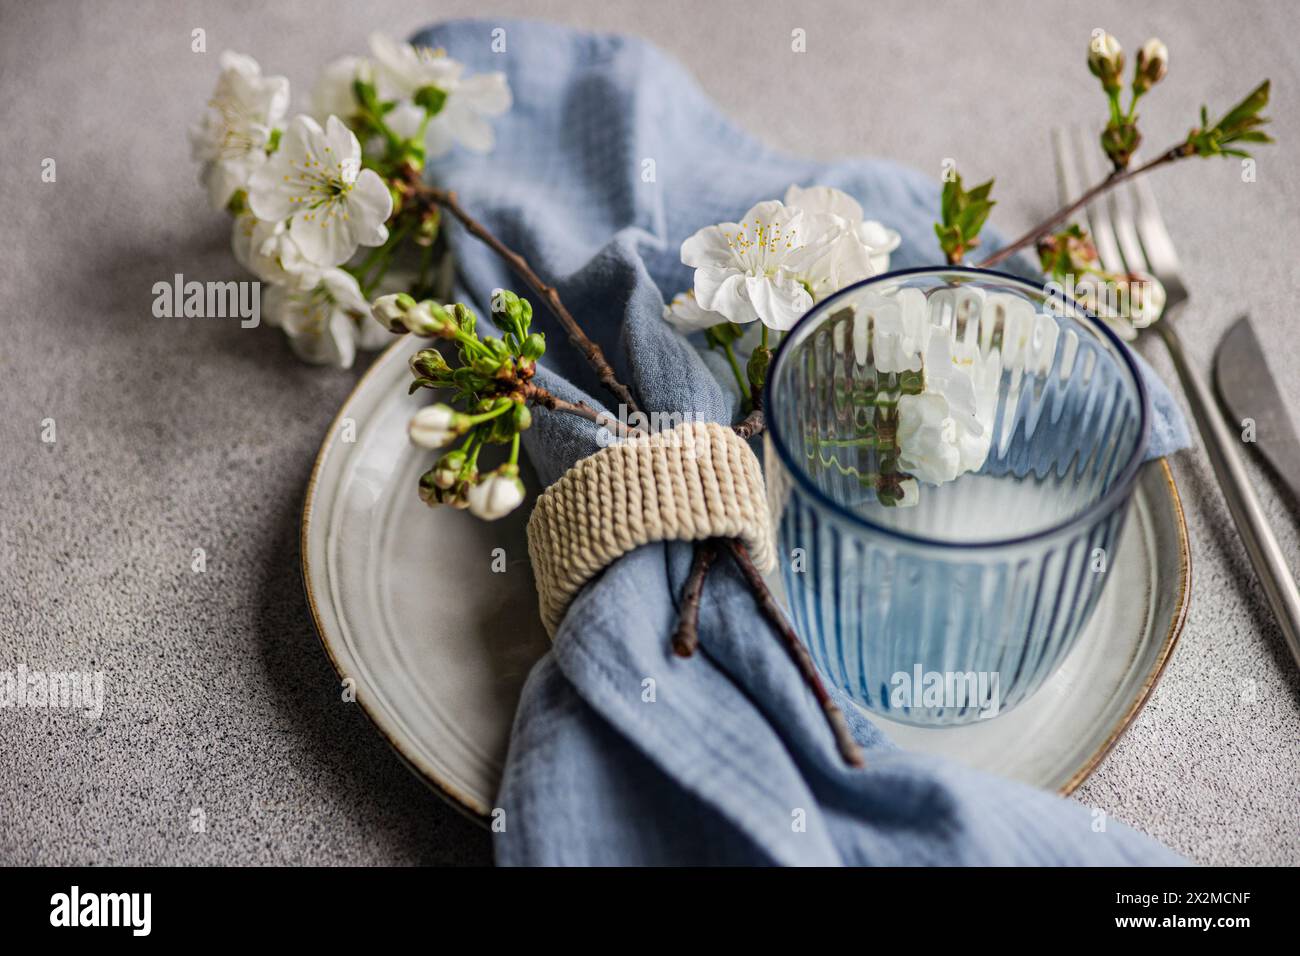 Une branche de fleur de cerisier fraîche complète une table sereine avec une assiette rustique, du verre rayé et un anneau de serviette sur un fond texturé Banque D'Images